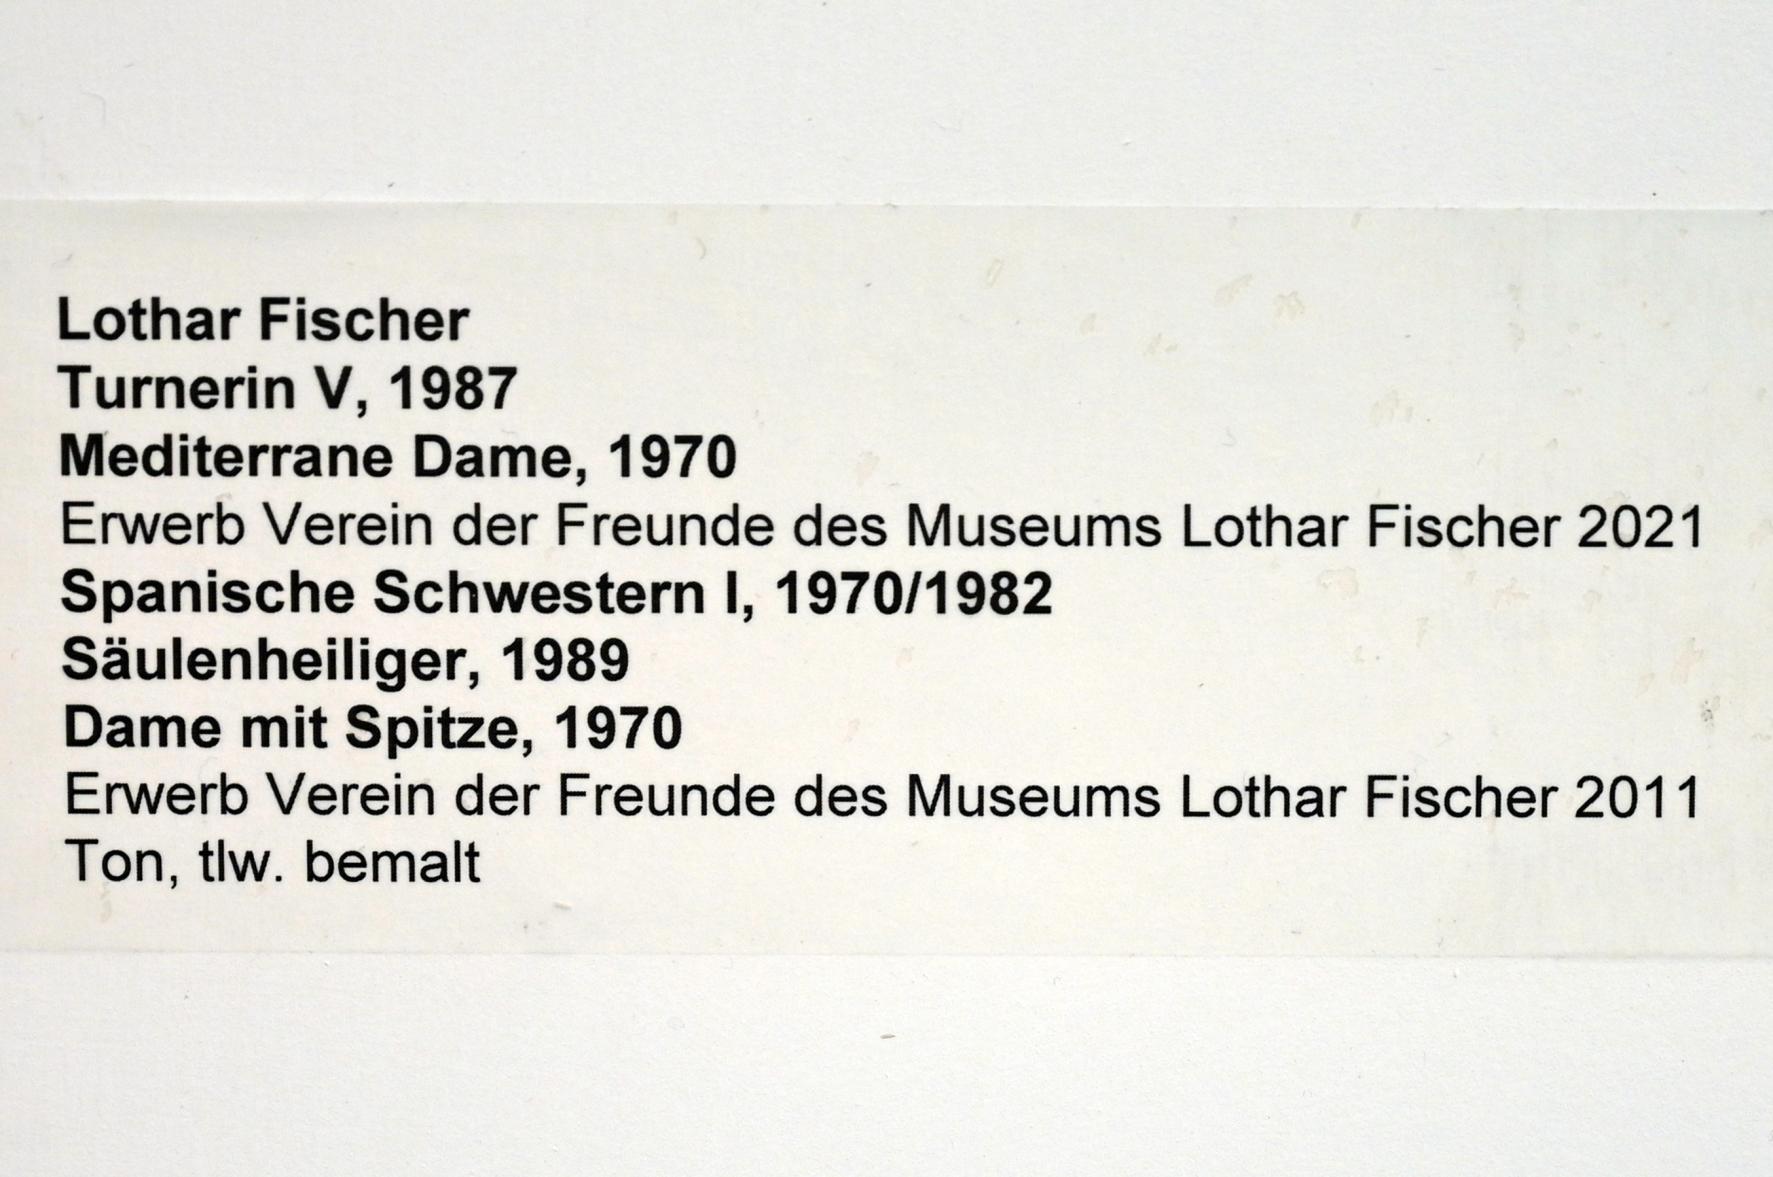 Lothar Fischer (1959–2004), Mediterrane Dame, Neumarkt in der Oberpfalz, Museum Lothar Fischer, Obergeschoß Raum 6, 1970, Bild 2/2